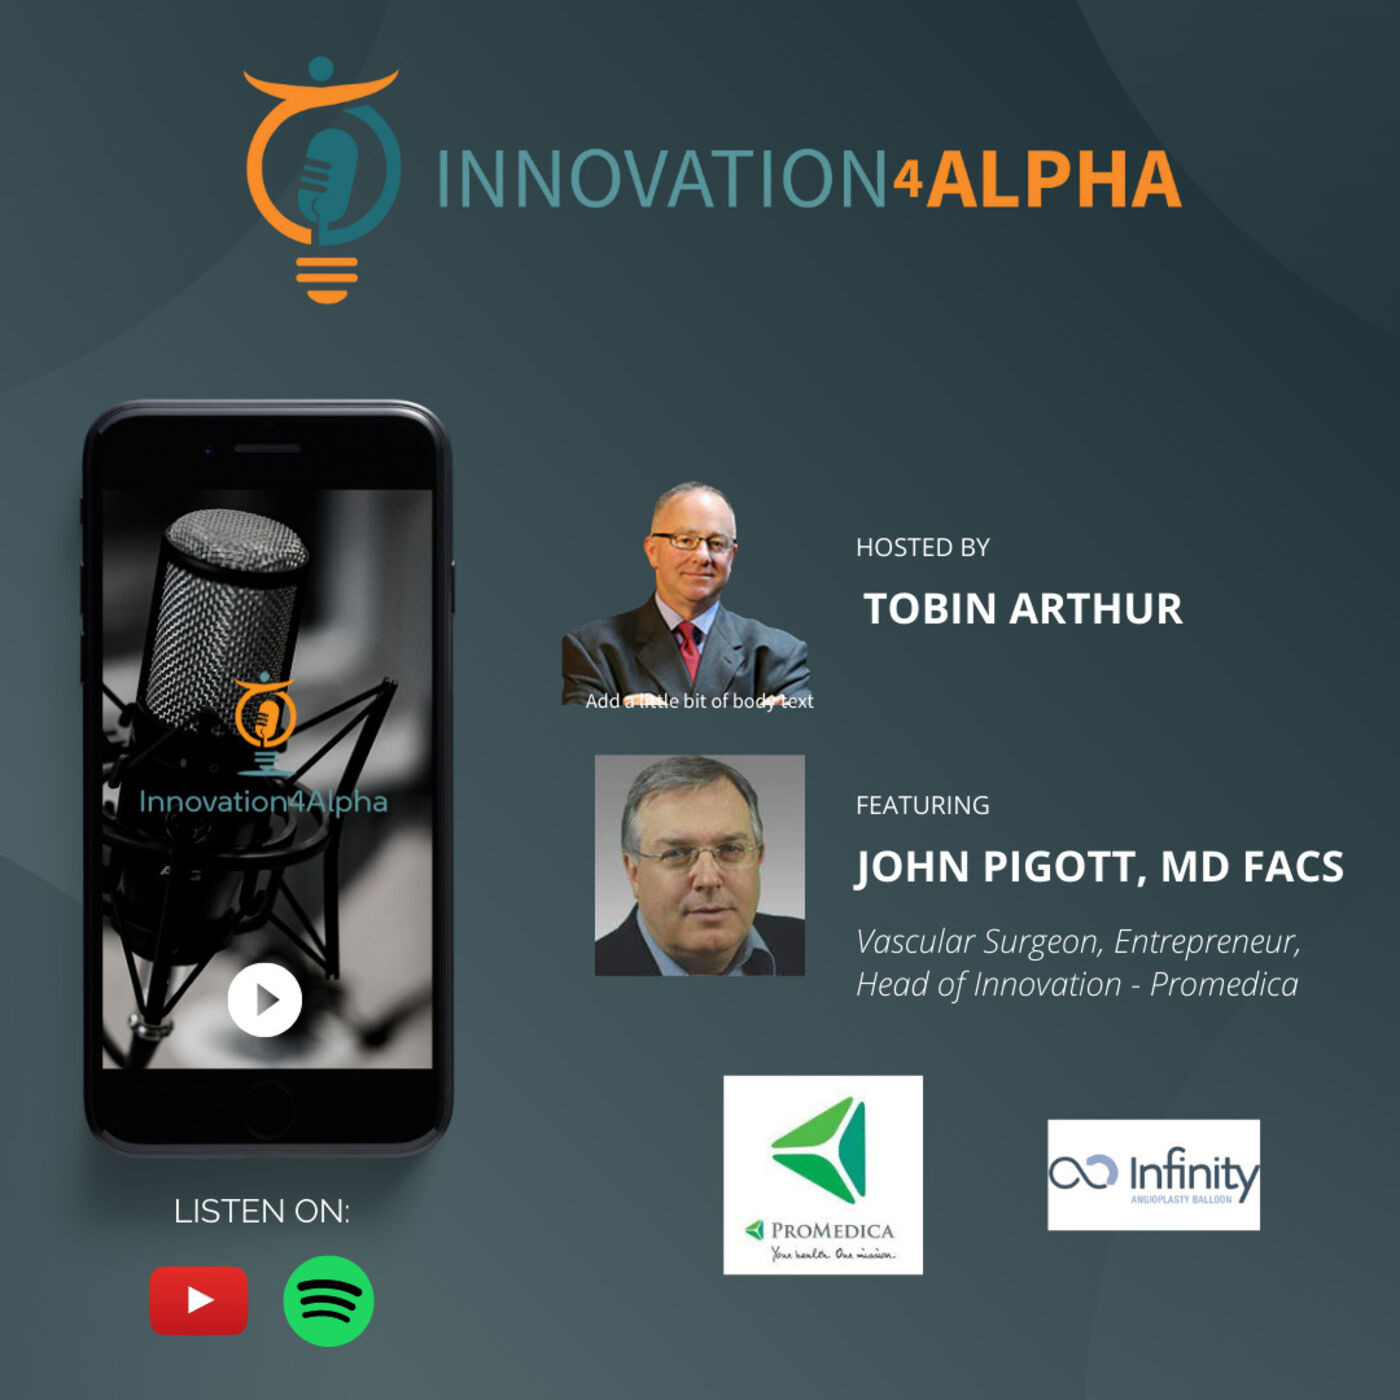 John Pigott, MD FACS - Surgeon, Entrepreneur, Head of Innovation - Promedica (209)